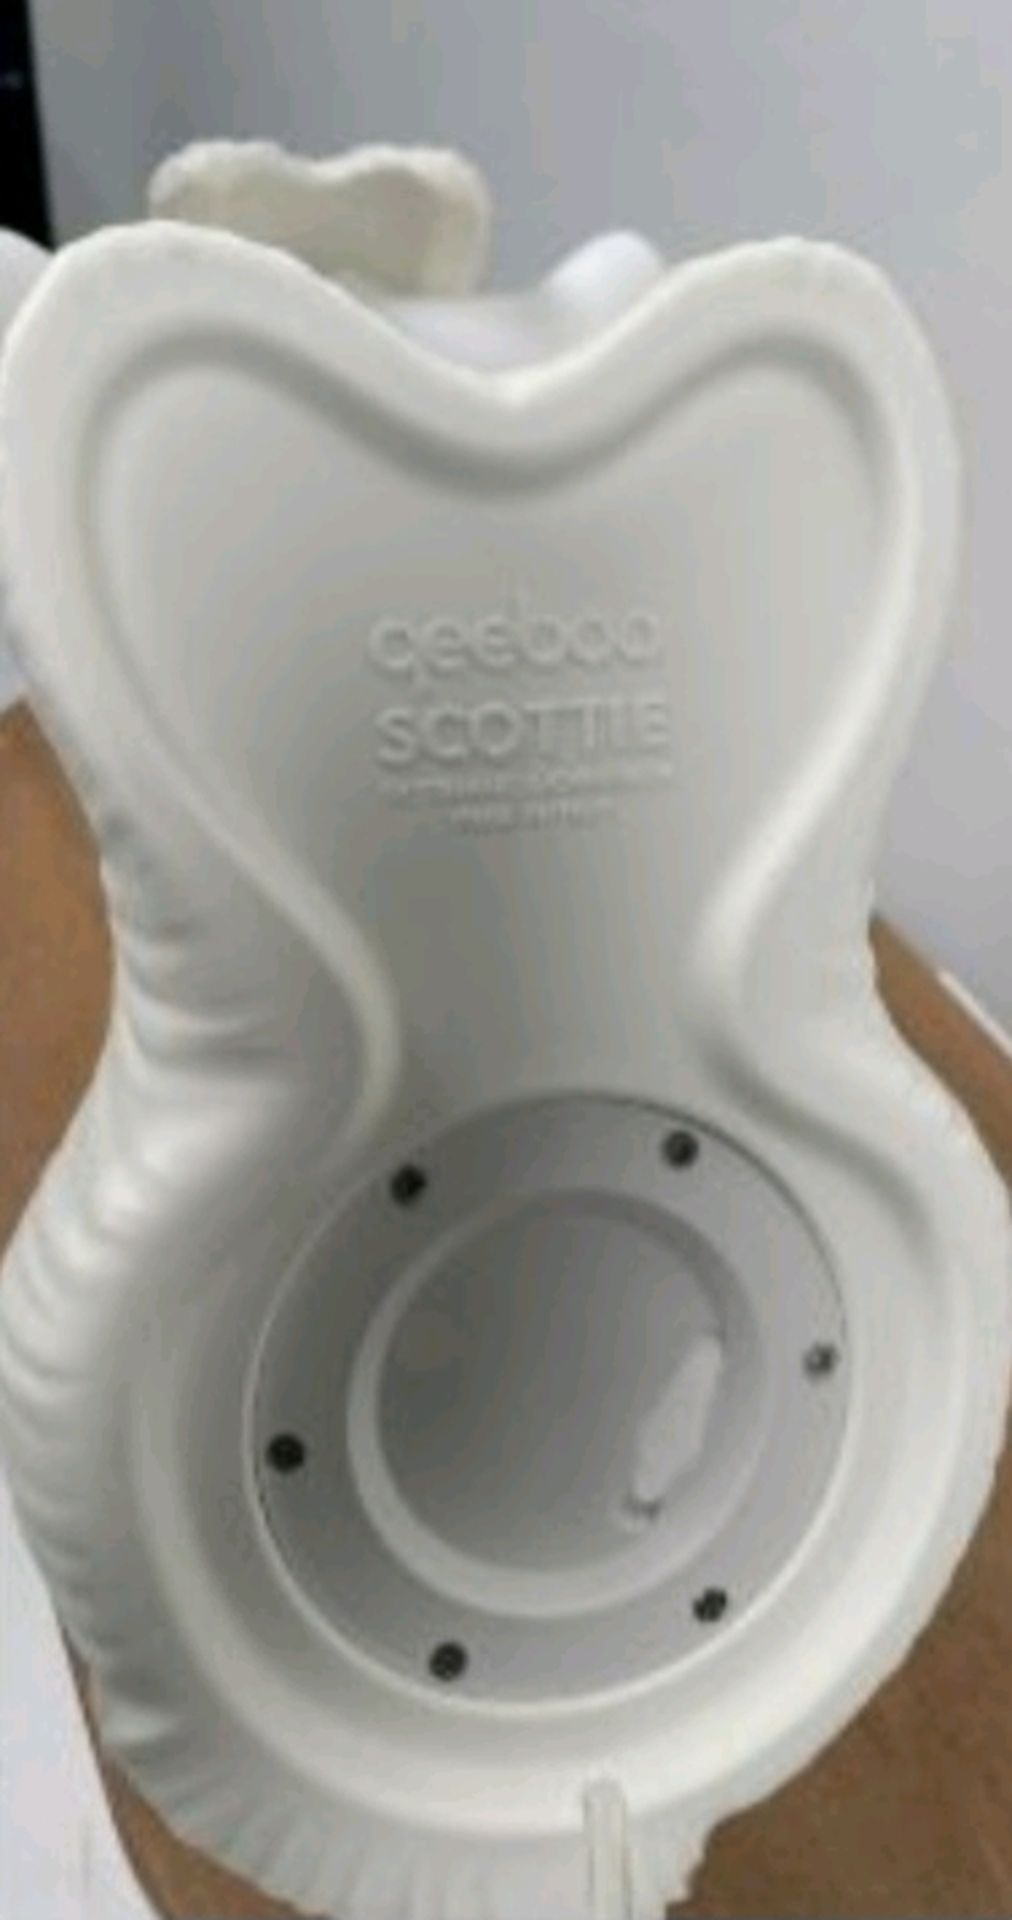 Qeeboo Scottie Floor Lamp - Bild 5 aus 5